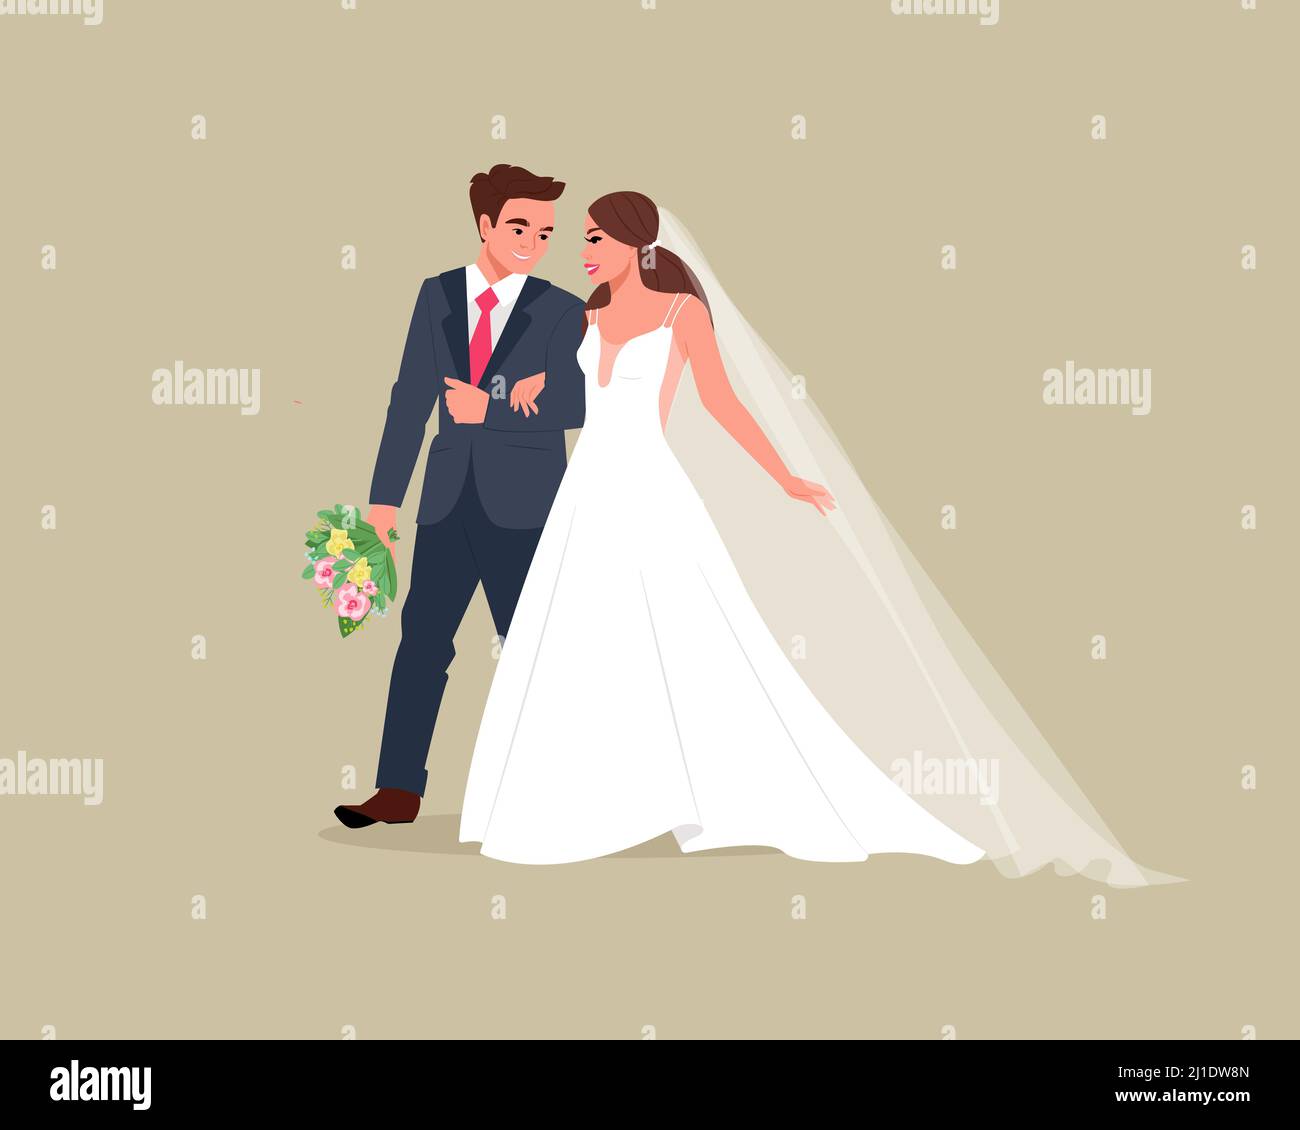 Les épouses heureux se tiennent les mains souriantes. Invitation de mariage. Illustration vectorielle de style dessin animé plat Illustration de Vecteur